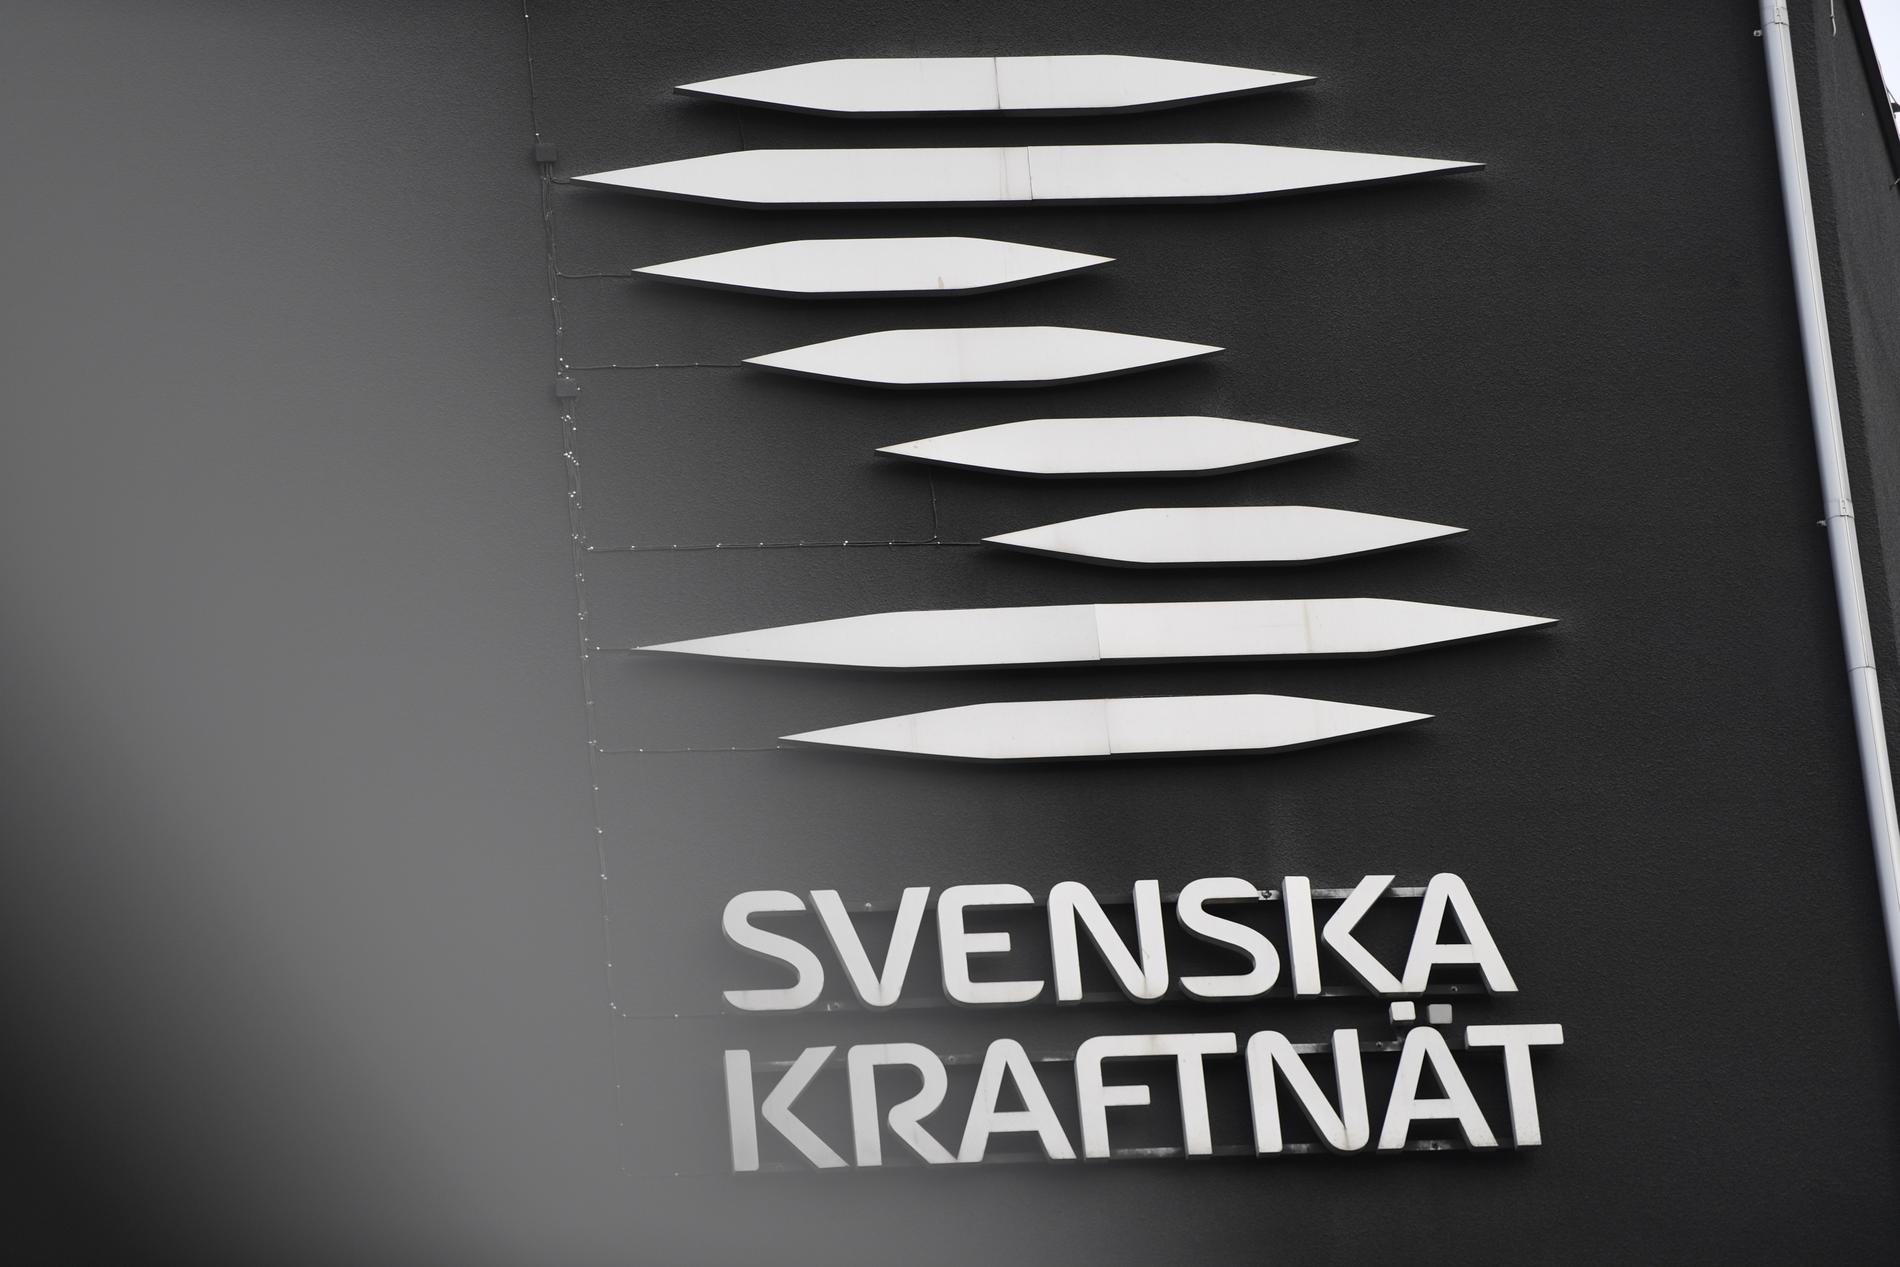 Sydvästlänkens södra del kan inte tas i drift förrän tidigast den 18 december, uppger Svenska kraftnät.